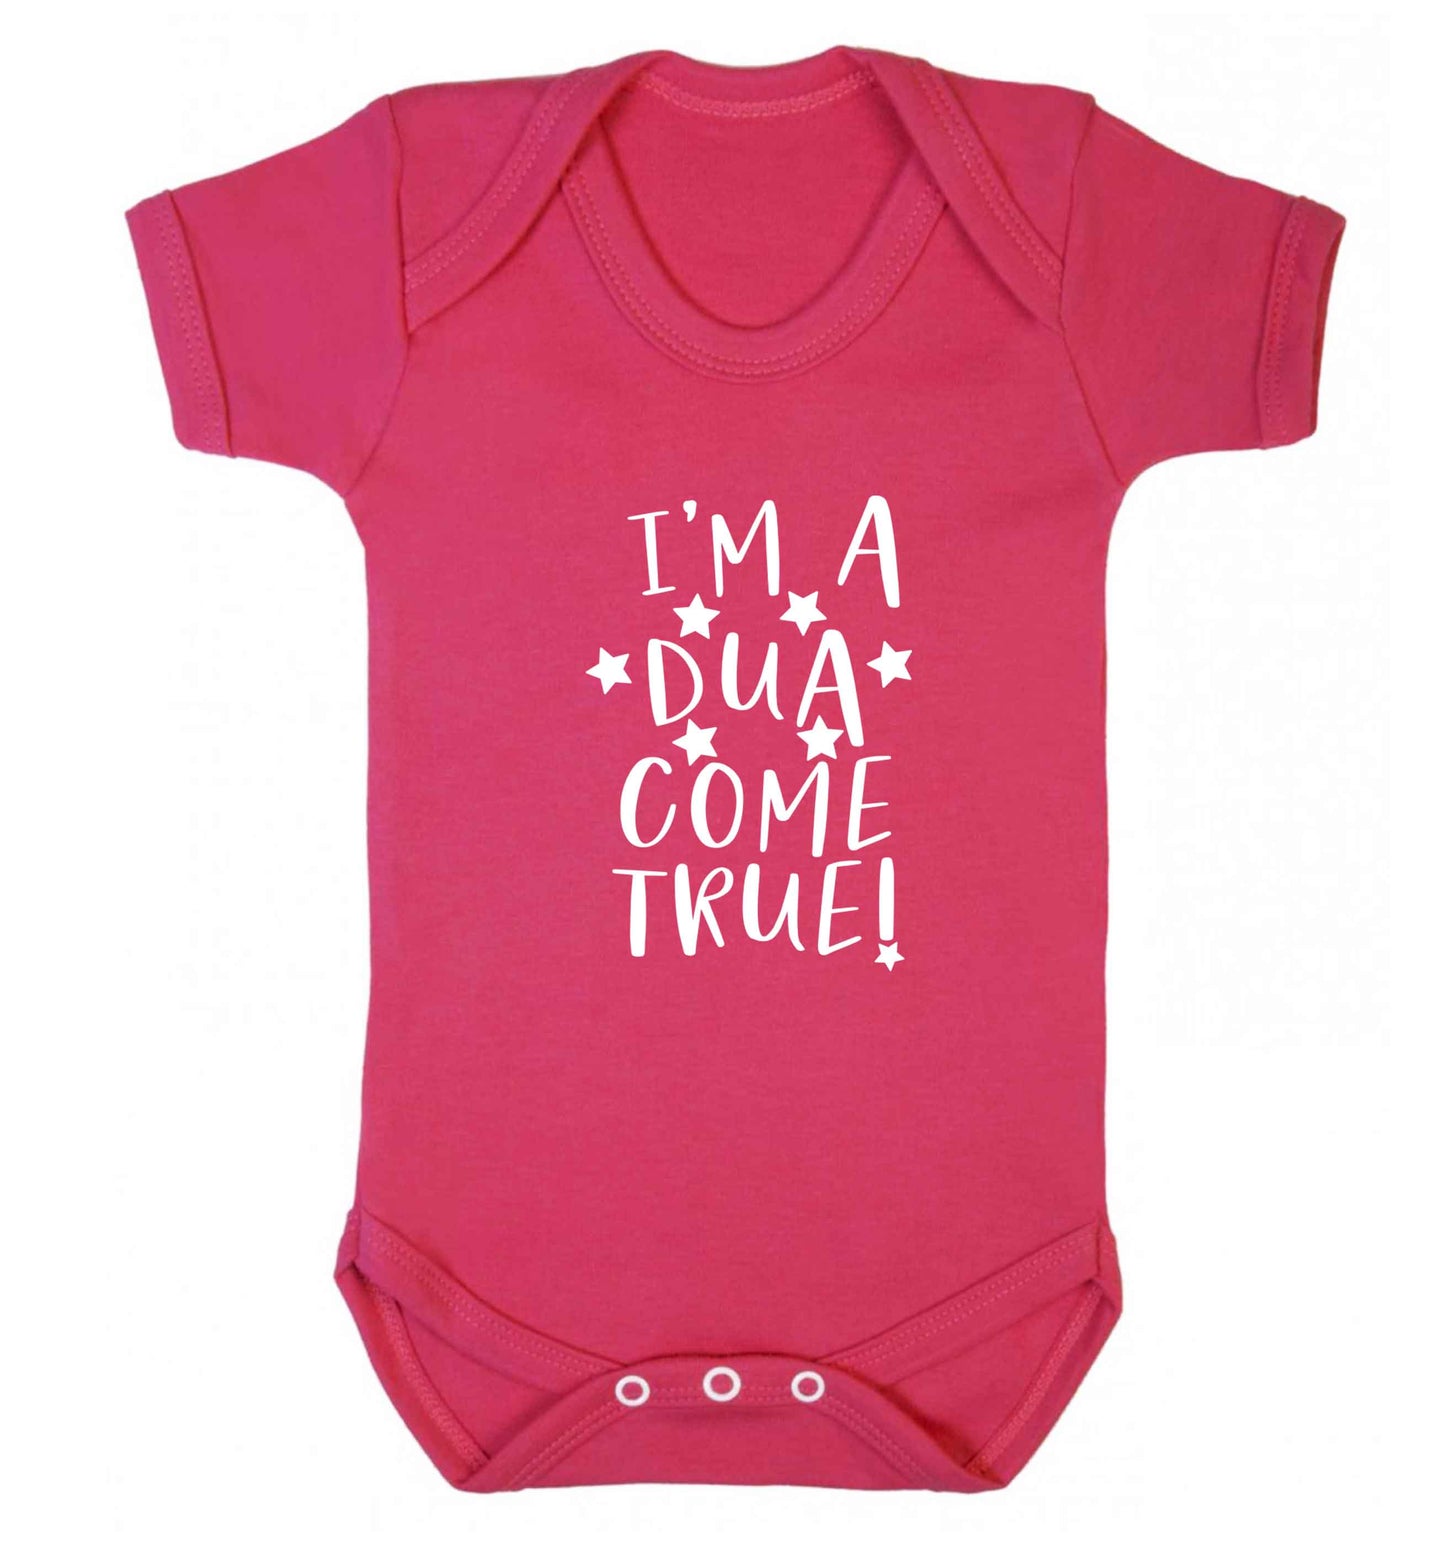 I'm a dua come true baby vest dark pink 18-24 months